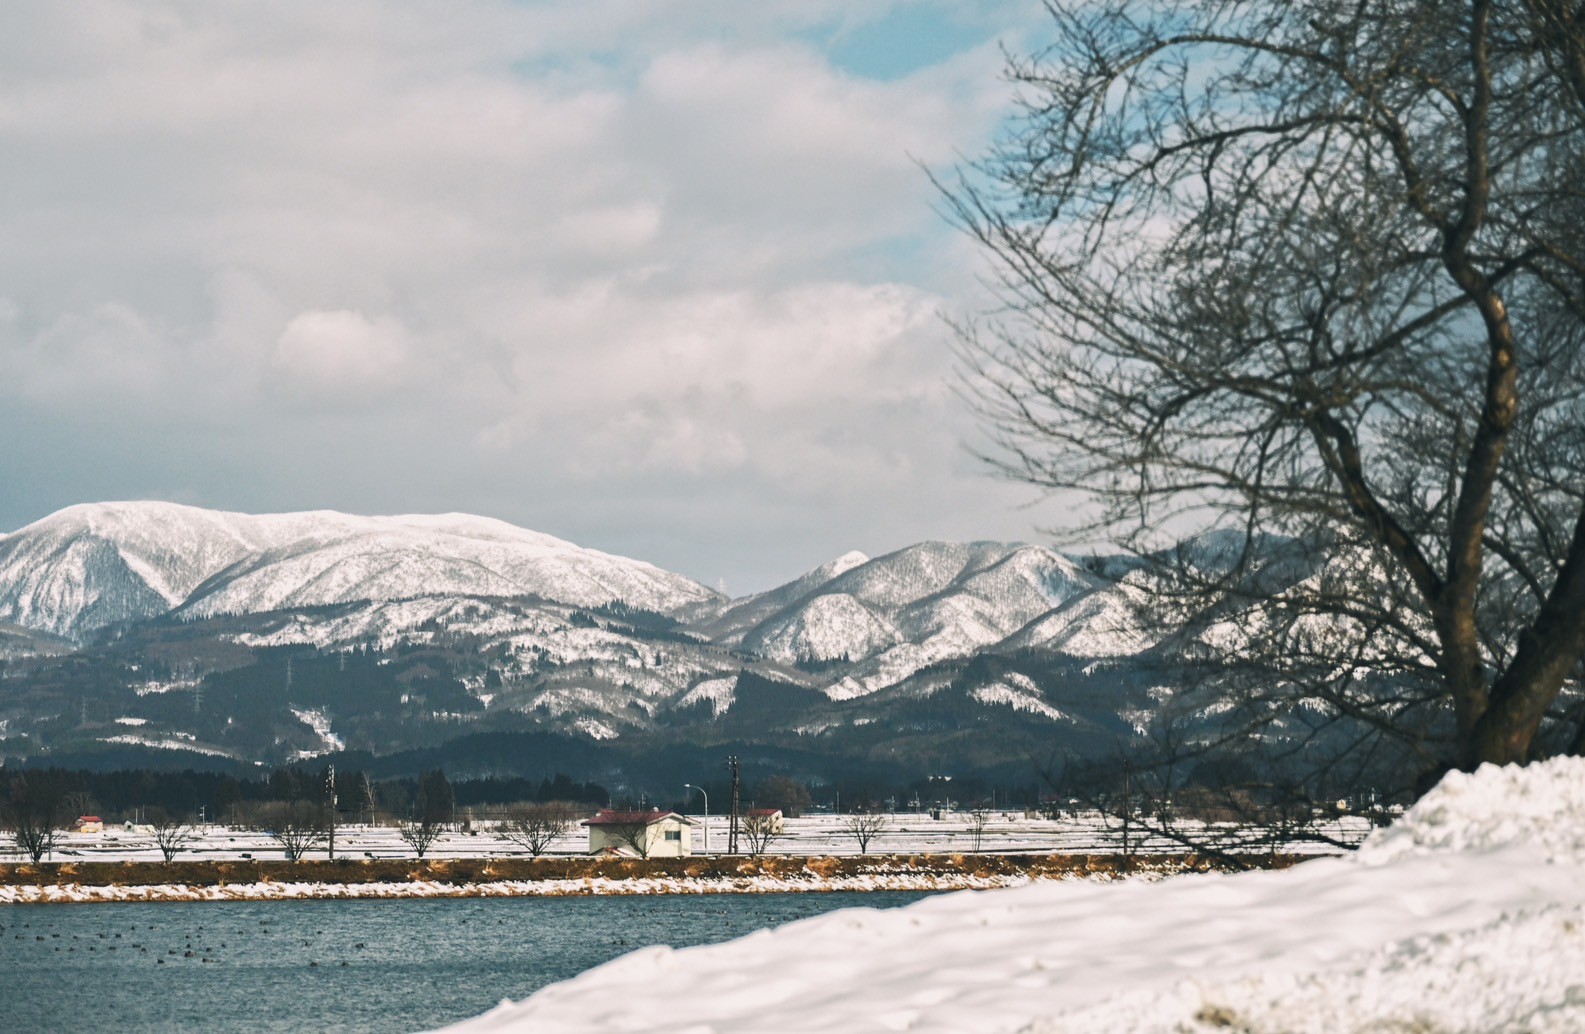 日本山形景點德良湖，湖邊日式洋食牛排欣賞冬日雪白靄靄風景太愜意，免費兒童廣場四季都好玩